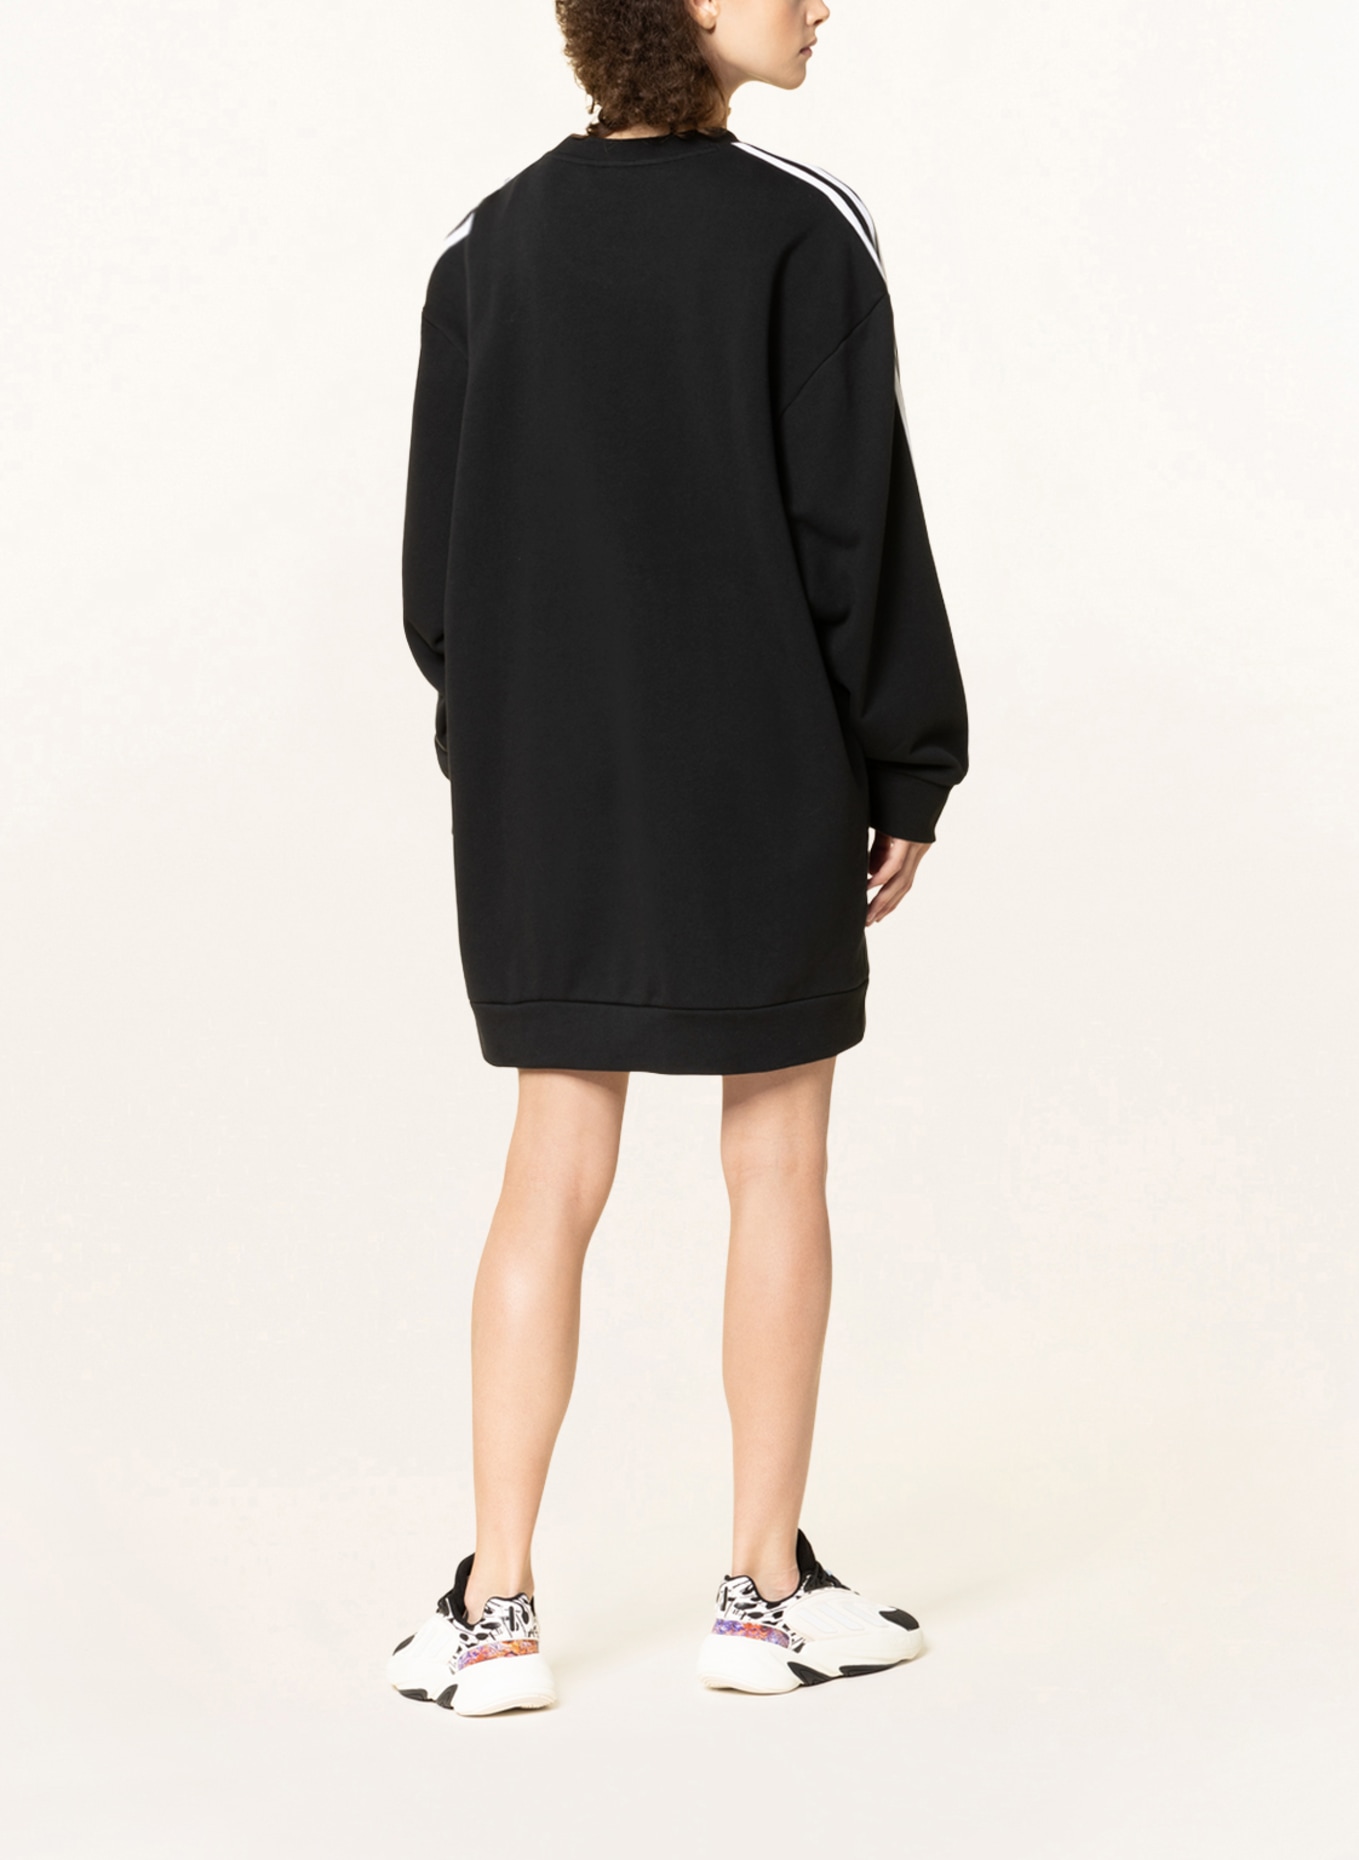 adidas Originals Sweater ADICOLOR dress black CLASSICS in